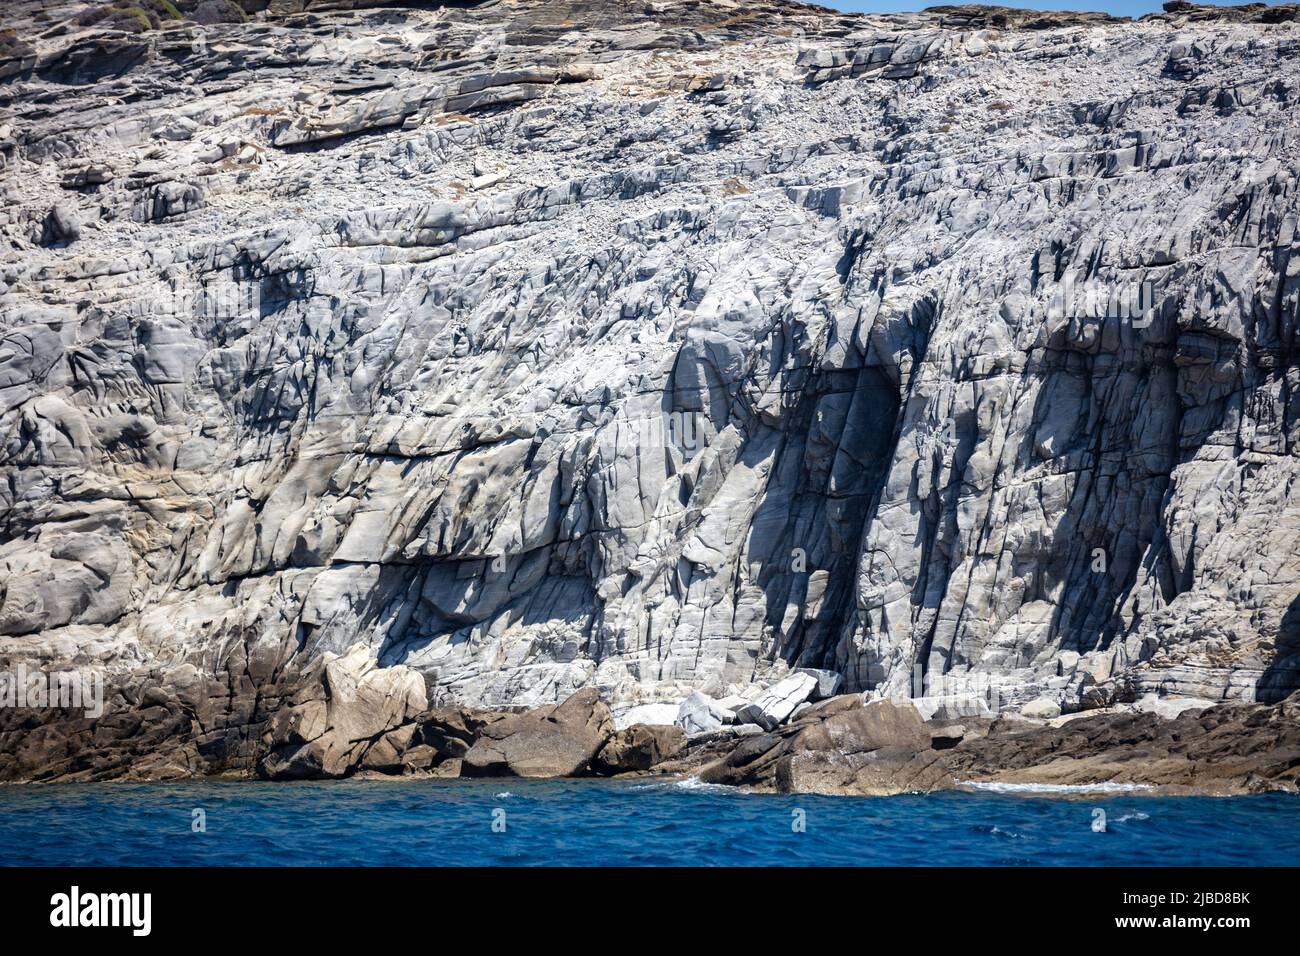 Mar Egeo. Formazioni rocciose, scogliere e grotte, acqua dell'oceano increspata. CICLADI Grecia. Seascape vicino all'isola di Mykonos, giorno di sole Foto Stock